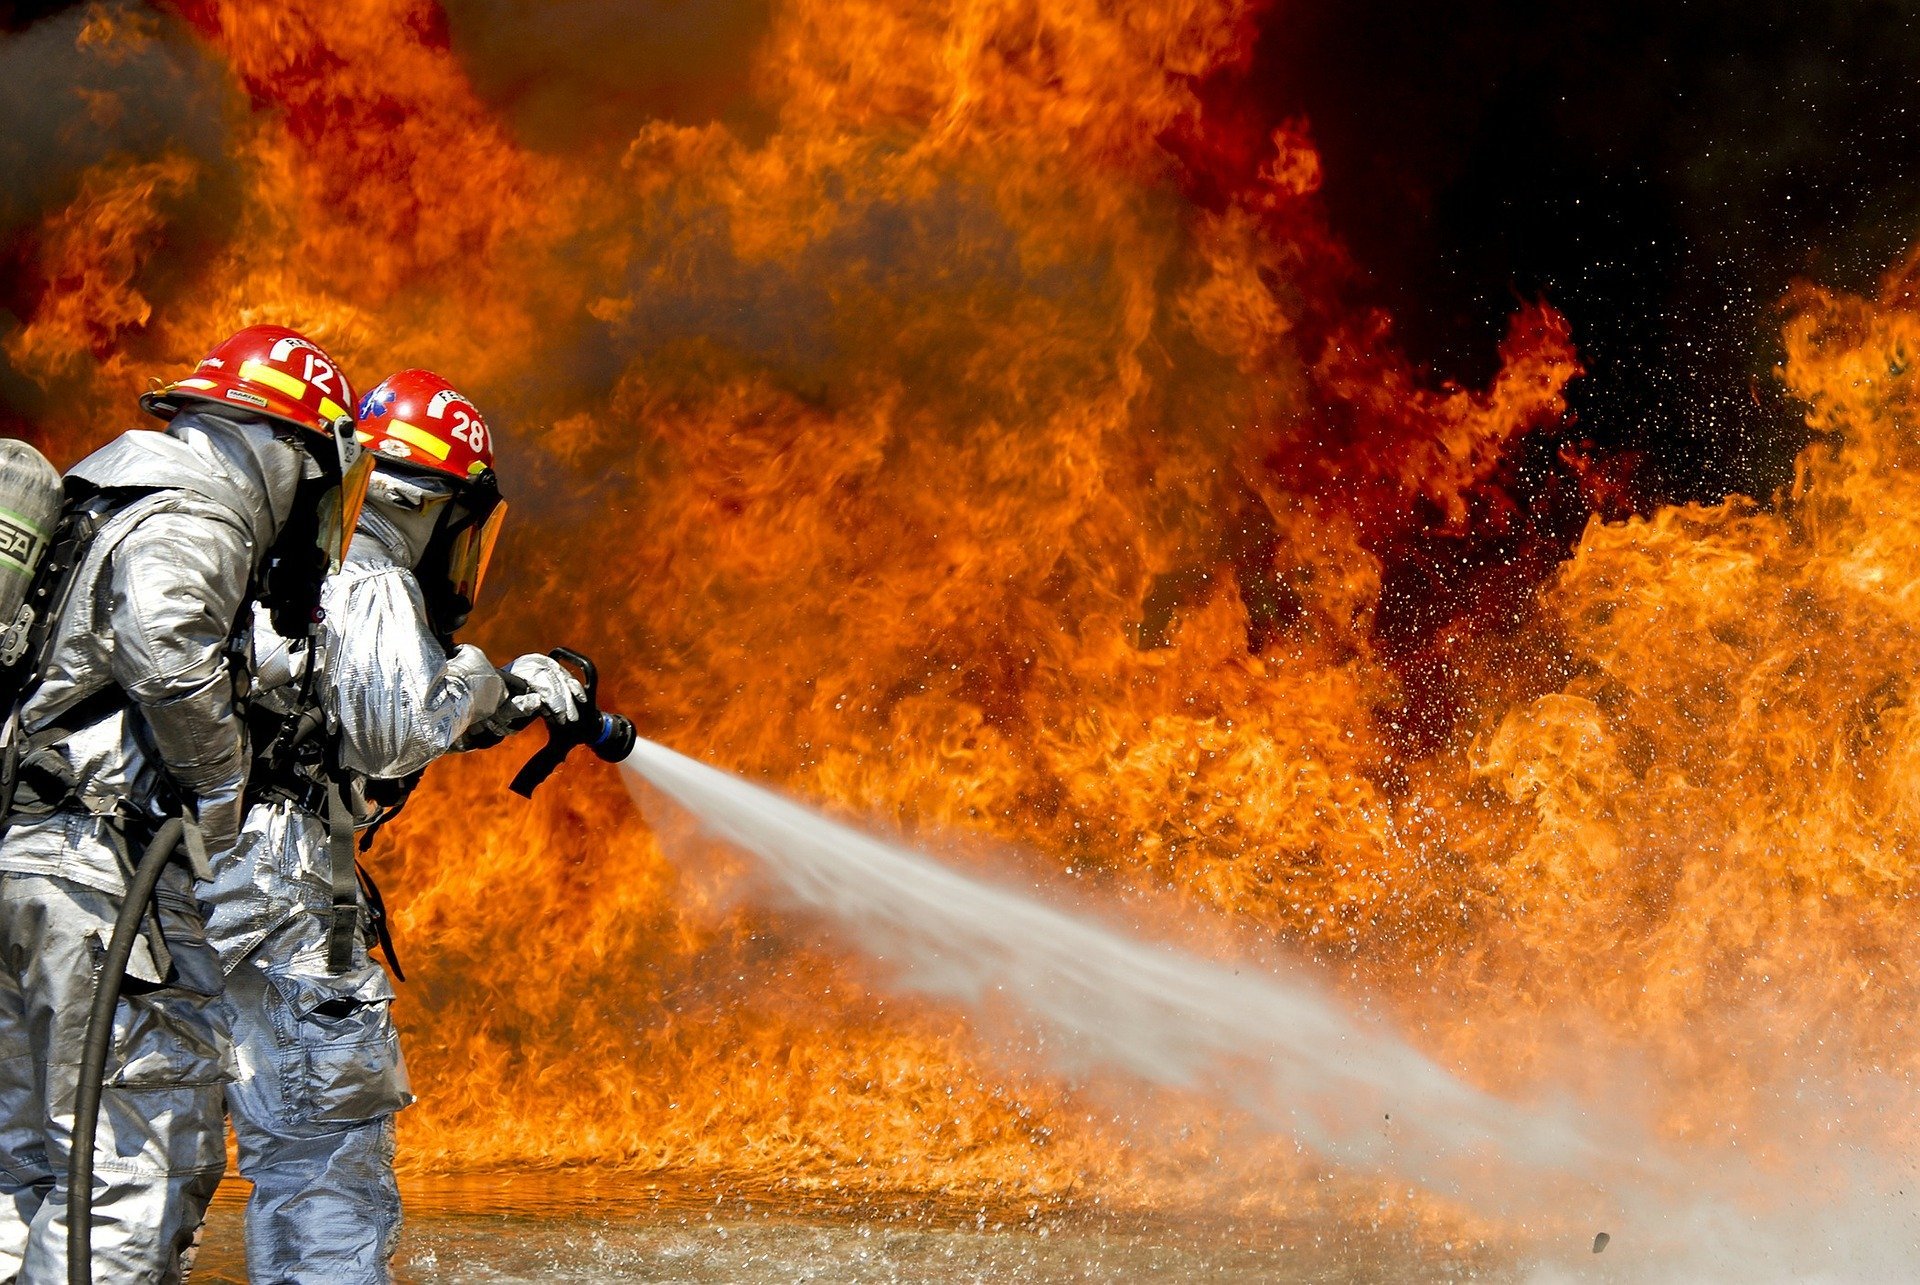 firefighters 115800 1920.jpg?resize=412,232 - Australie : Les photos montrant l'étendue des incendies diffusées dans les médias ne sont pas ce que l'on croit